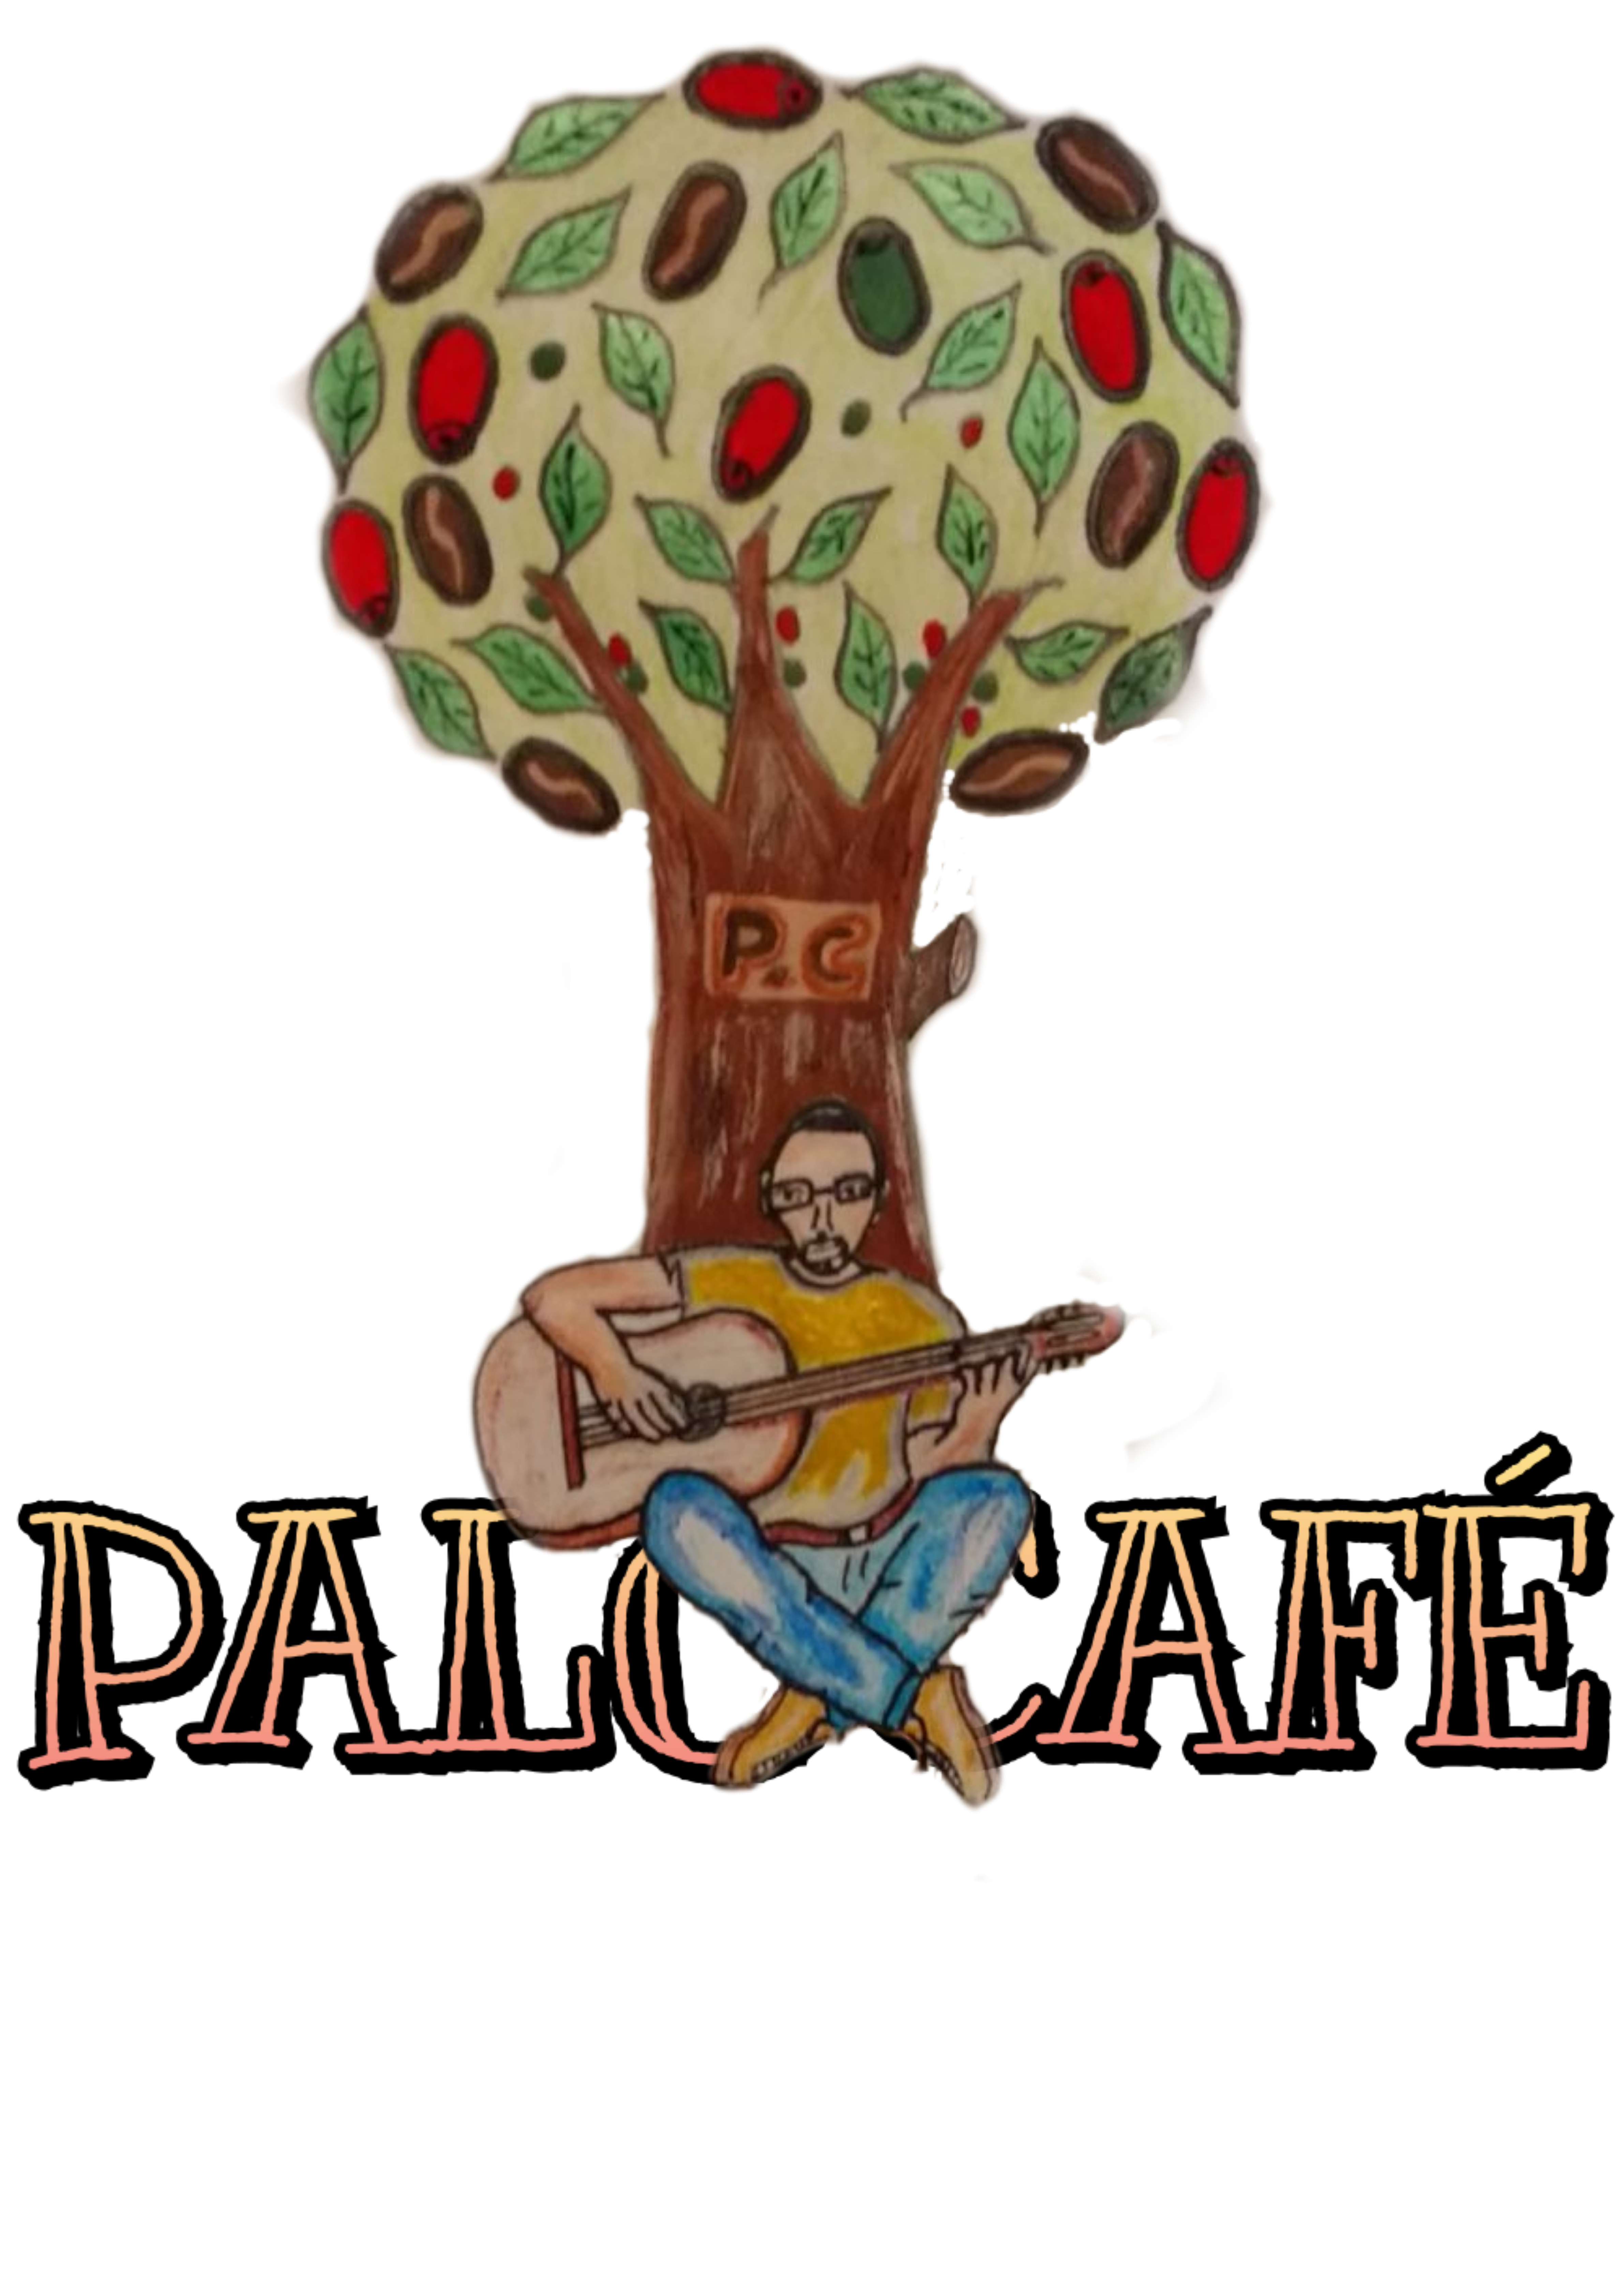 www.palocafe.com